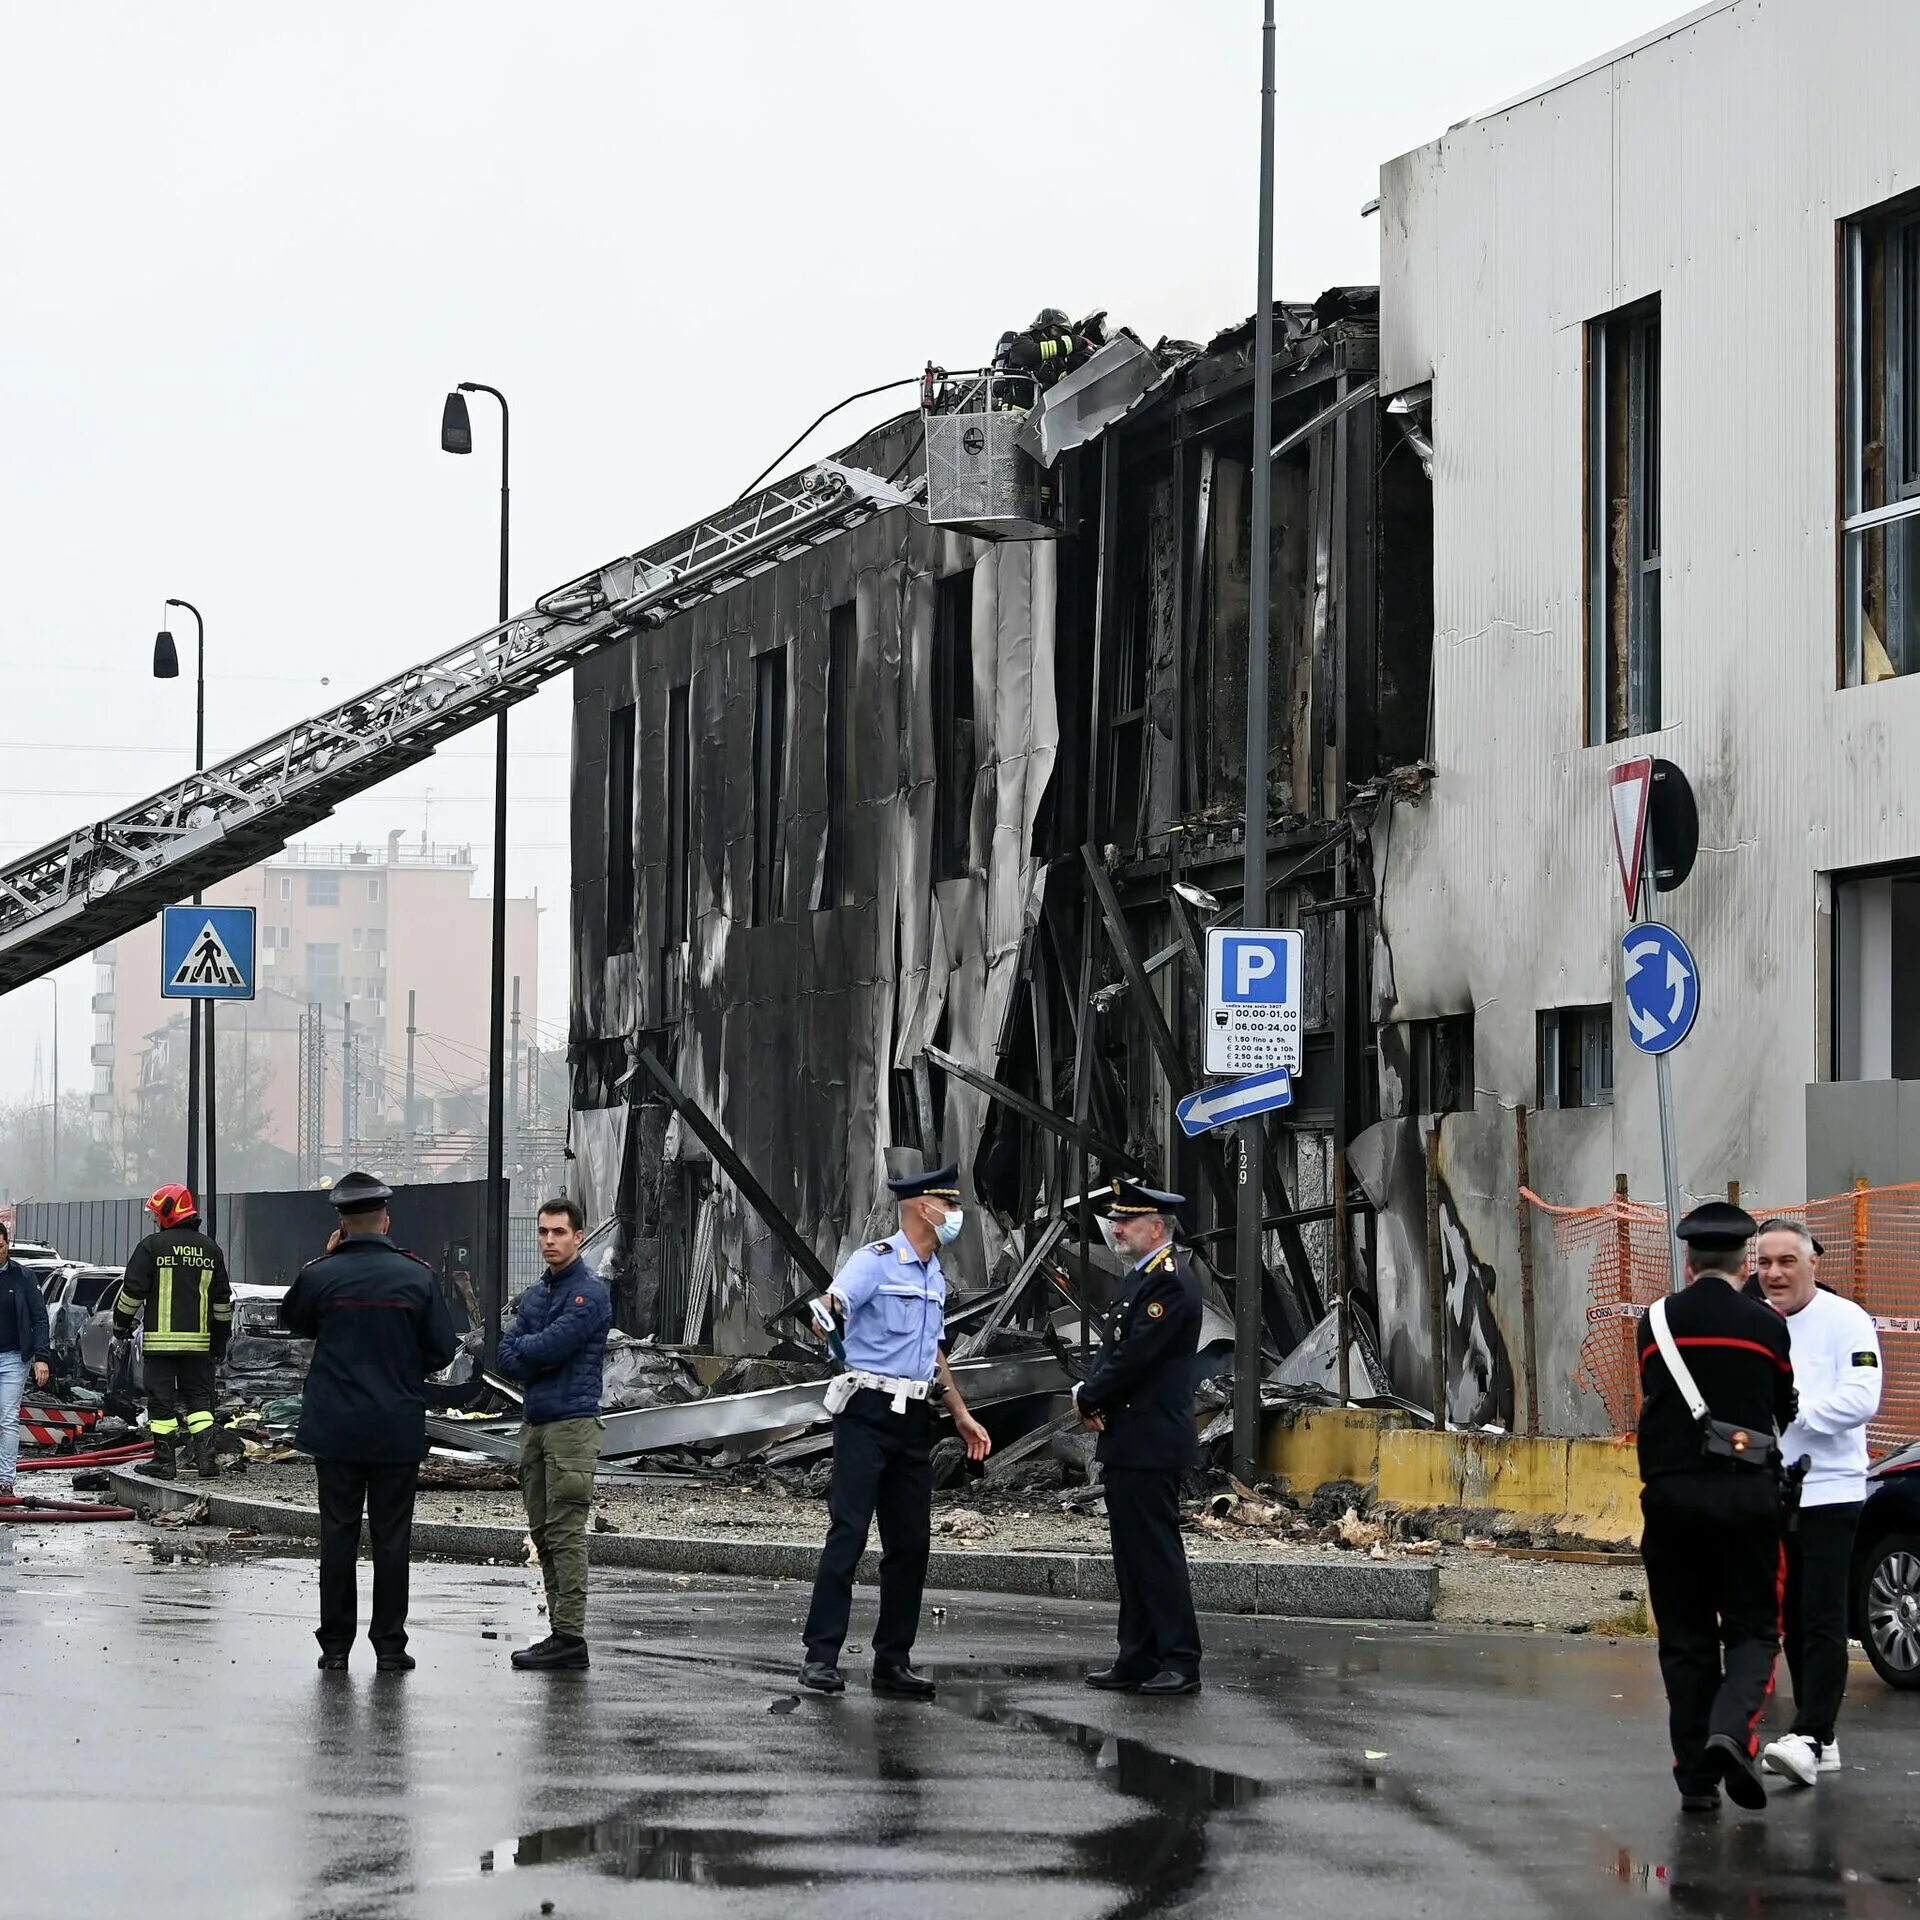 Самолет врезался в здание. Падения Италия. Башня Пирелли в Милане катастрофа самолета.